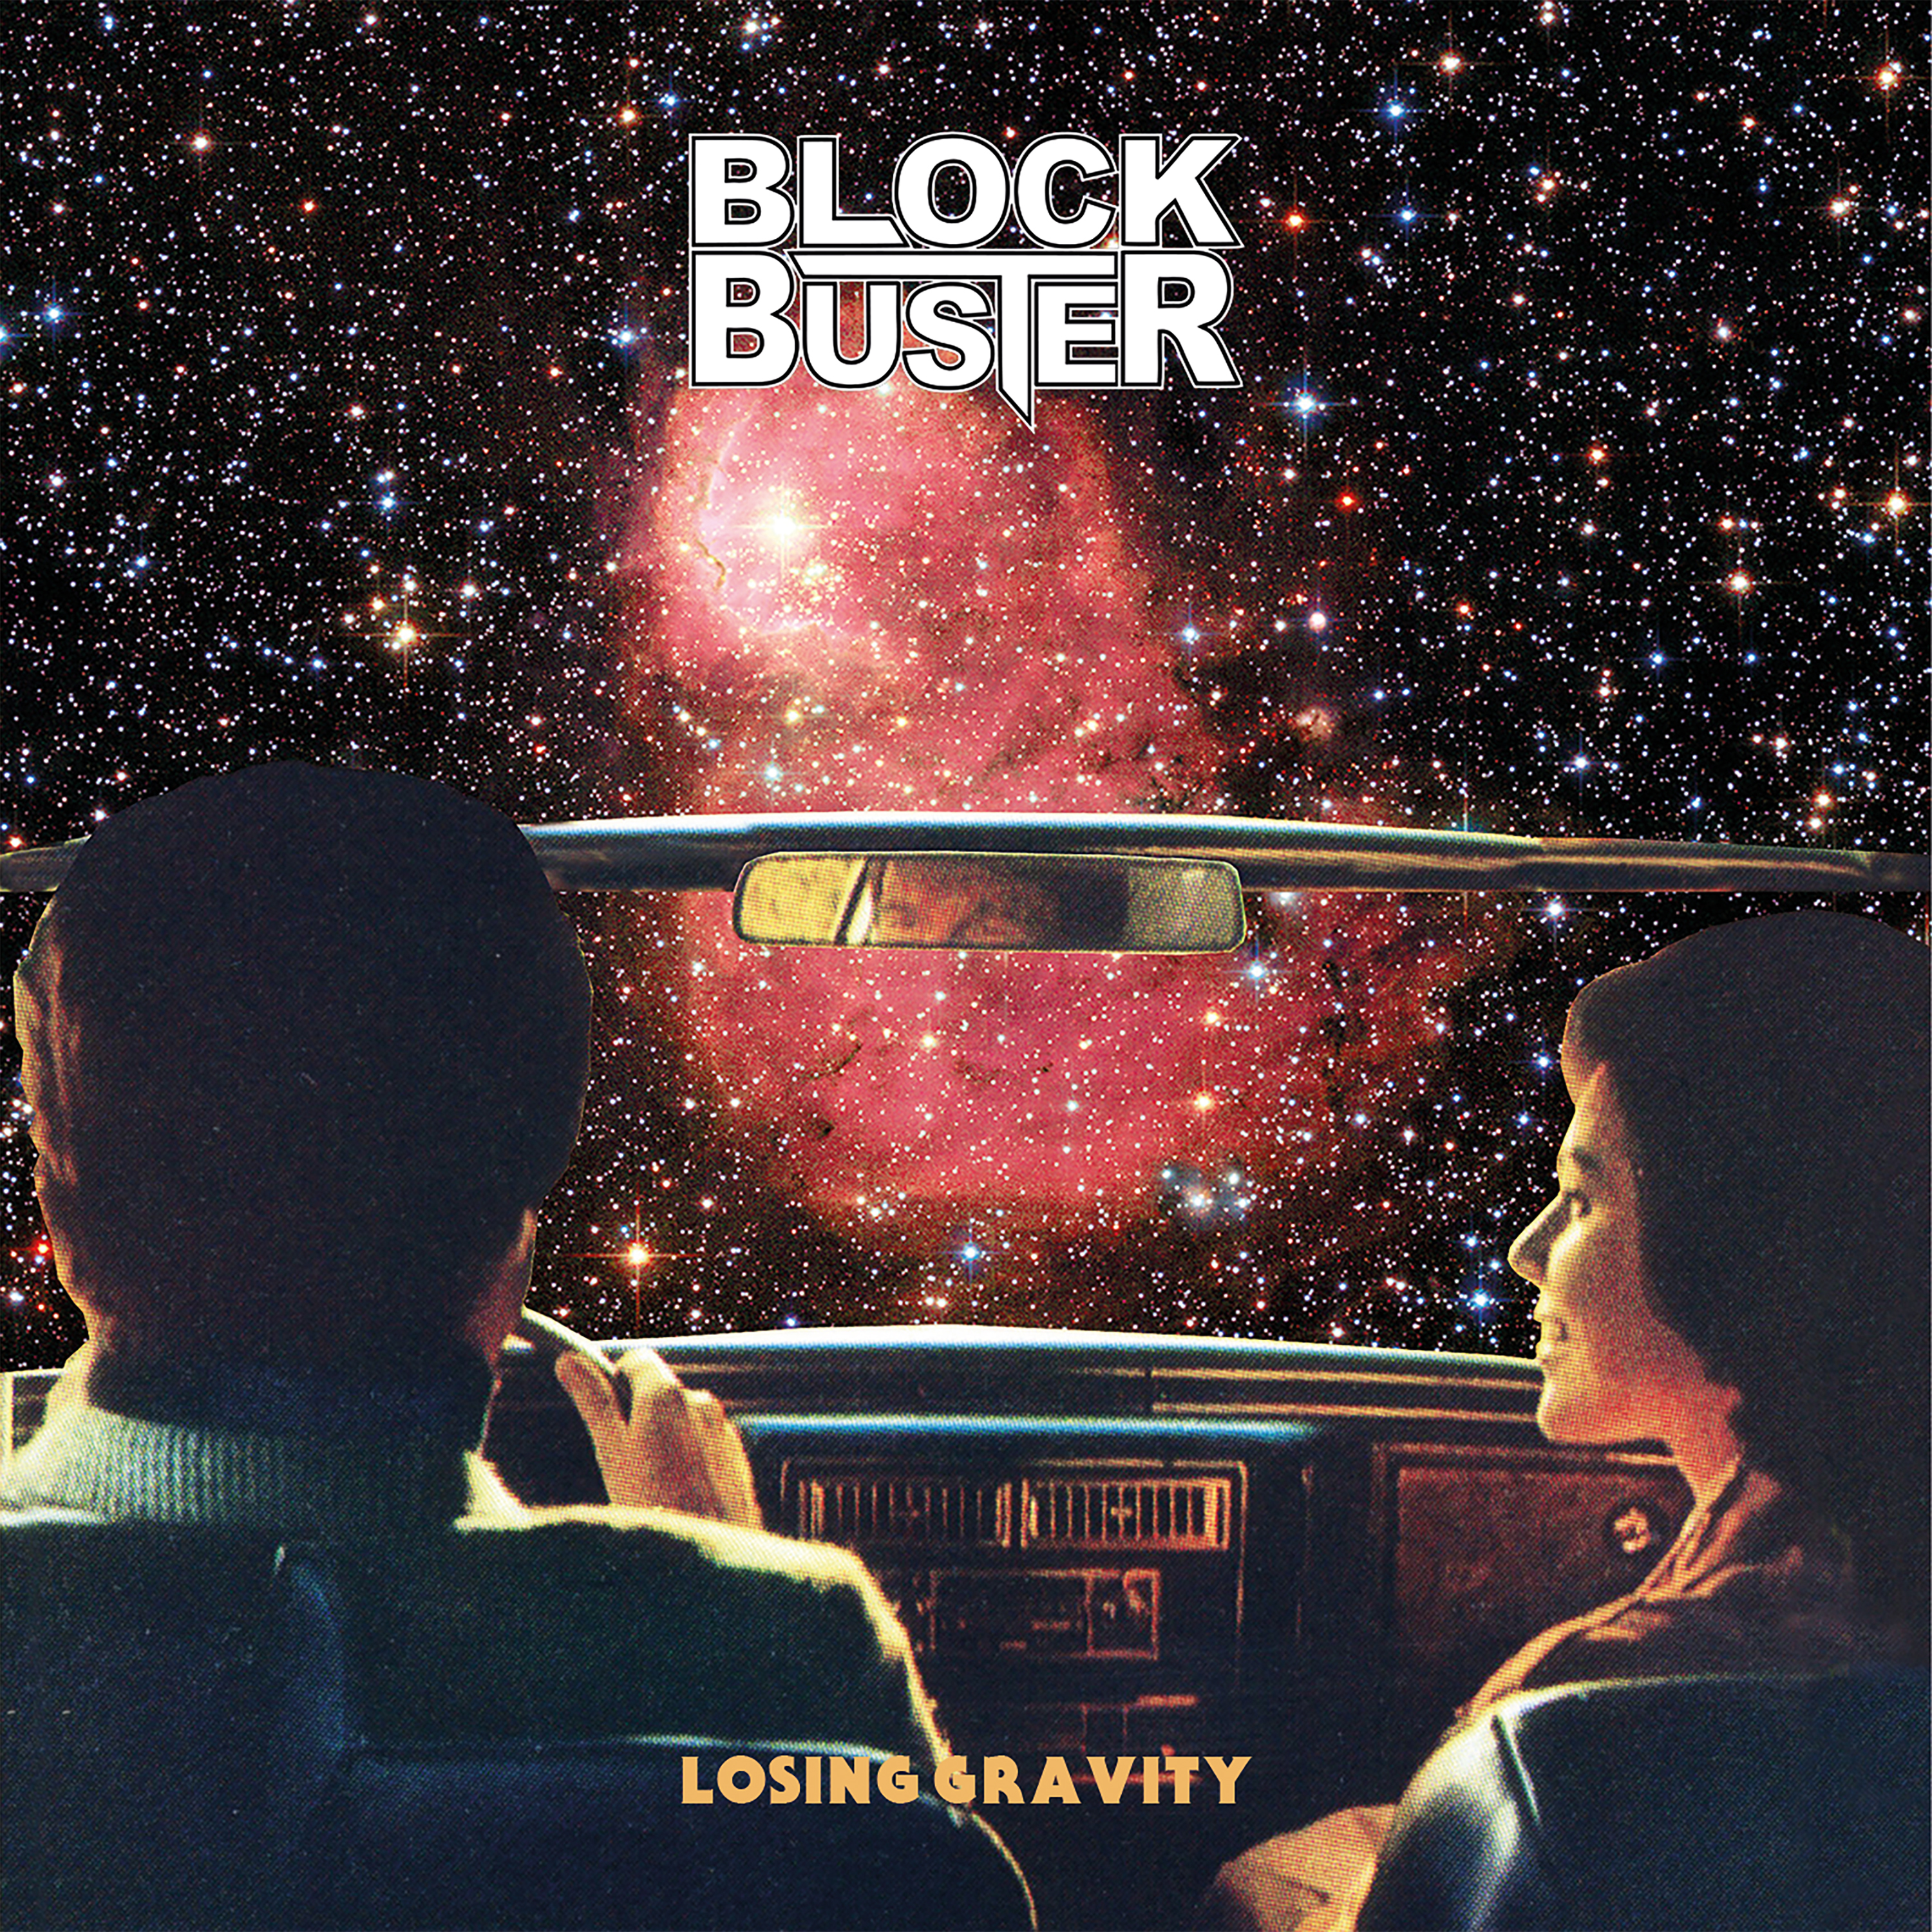 BLOCK BUSTER - “Losing Gravity”